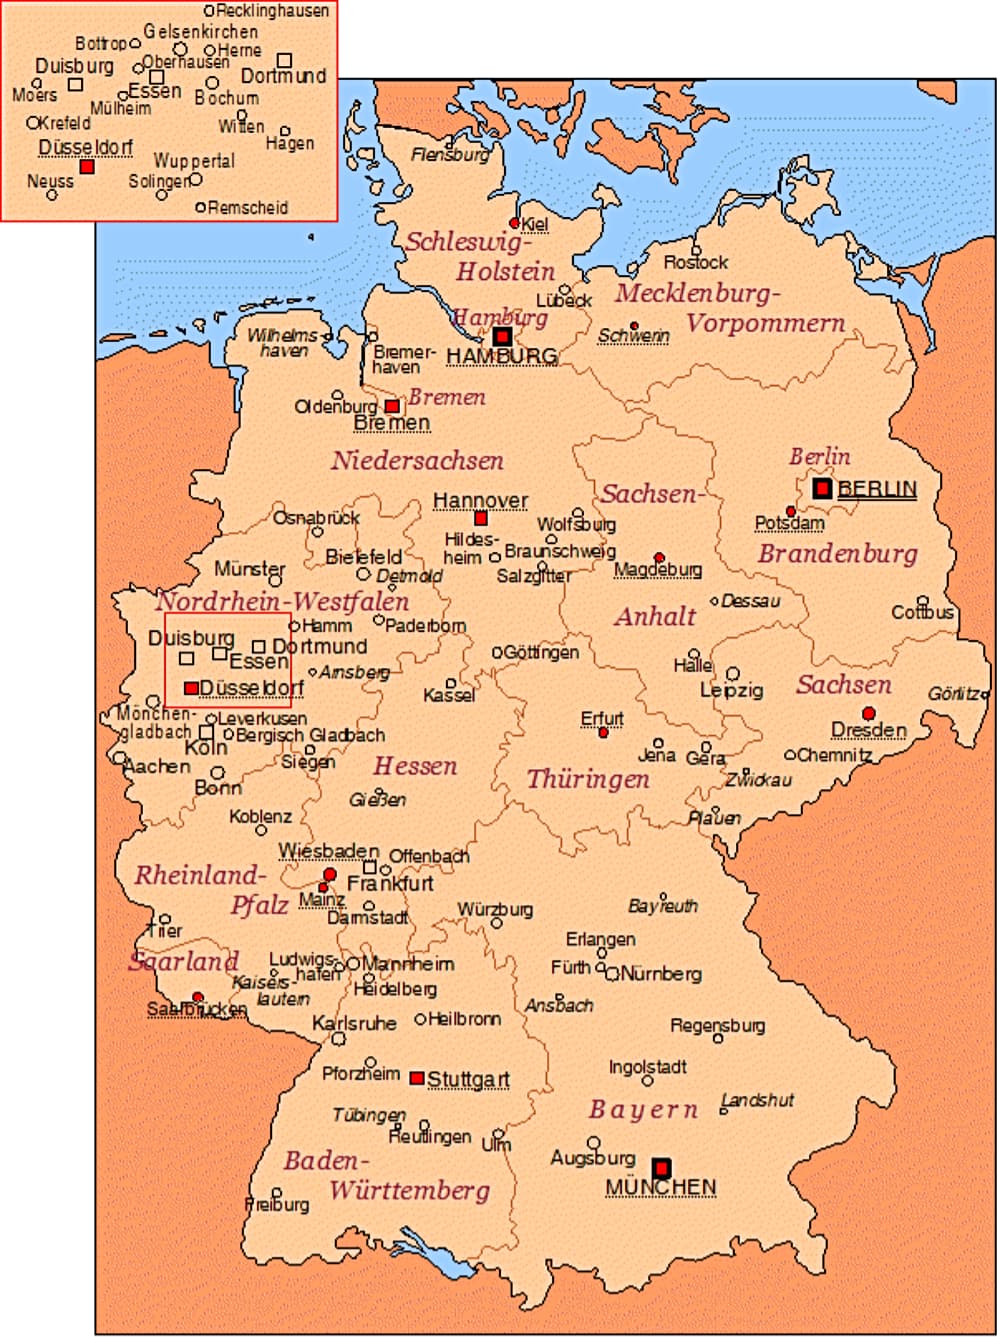 Karte nach Länder und mit Größte Städte Deutschlands